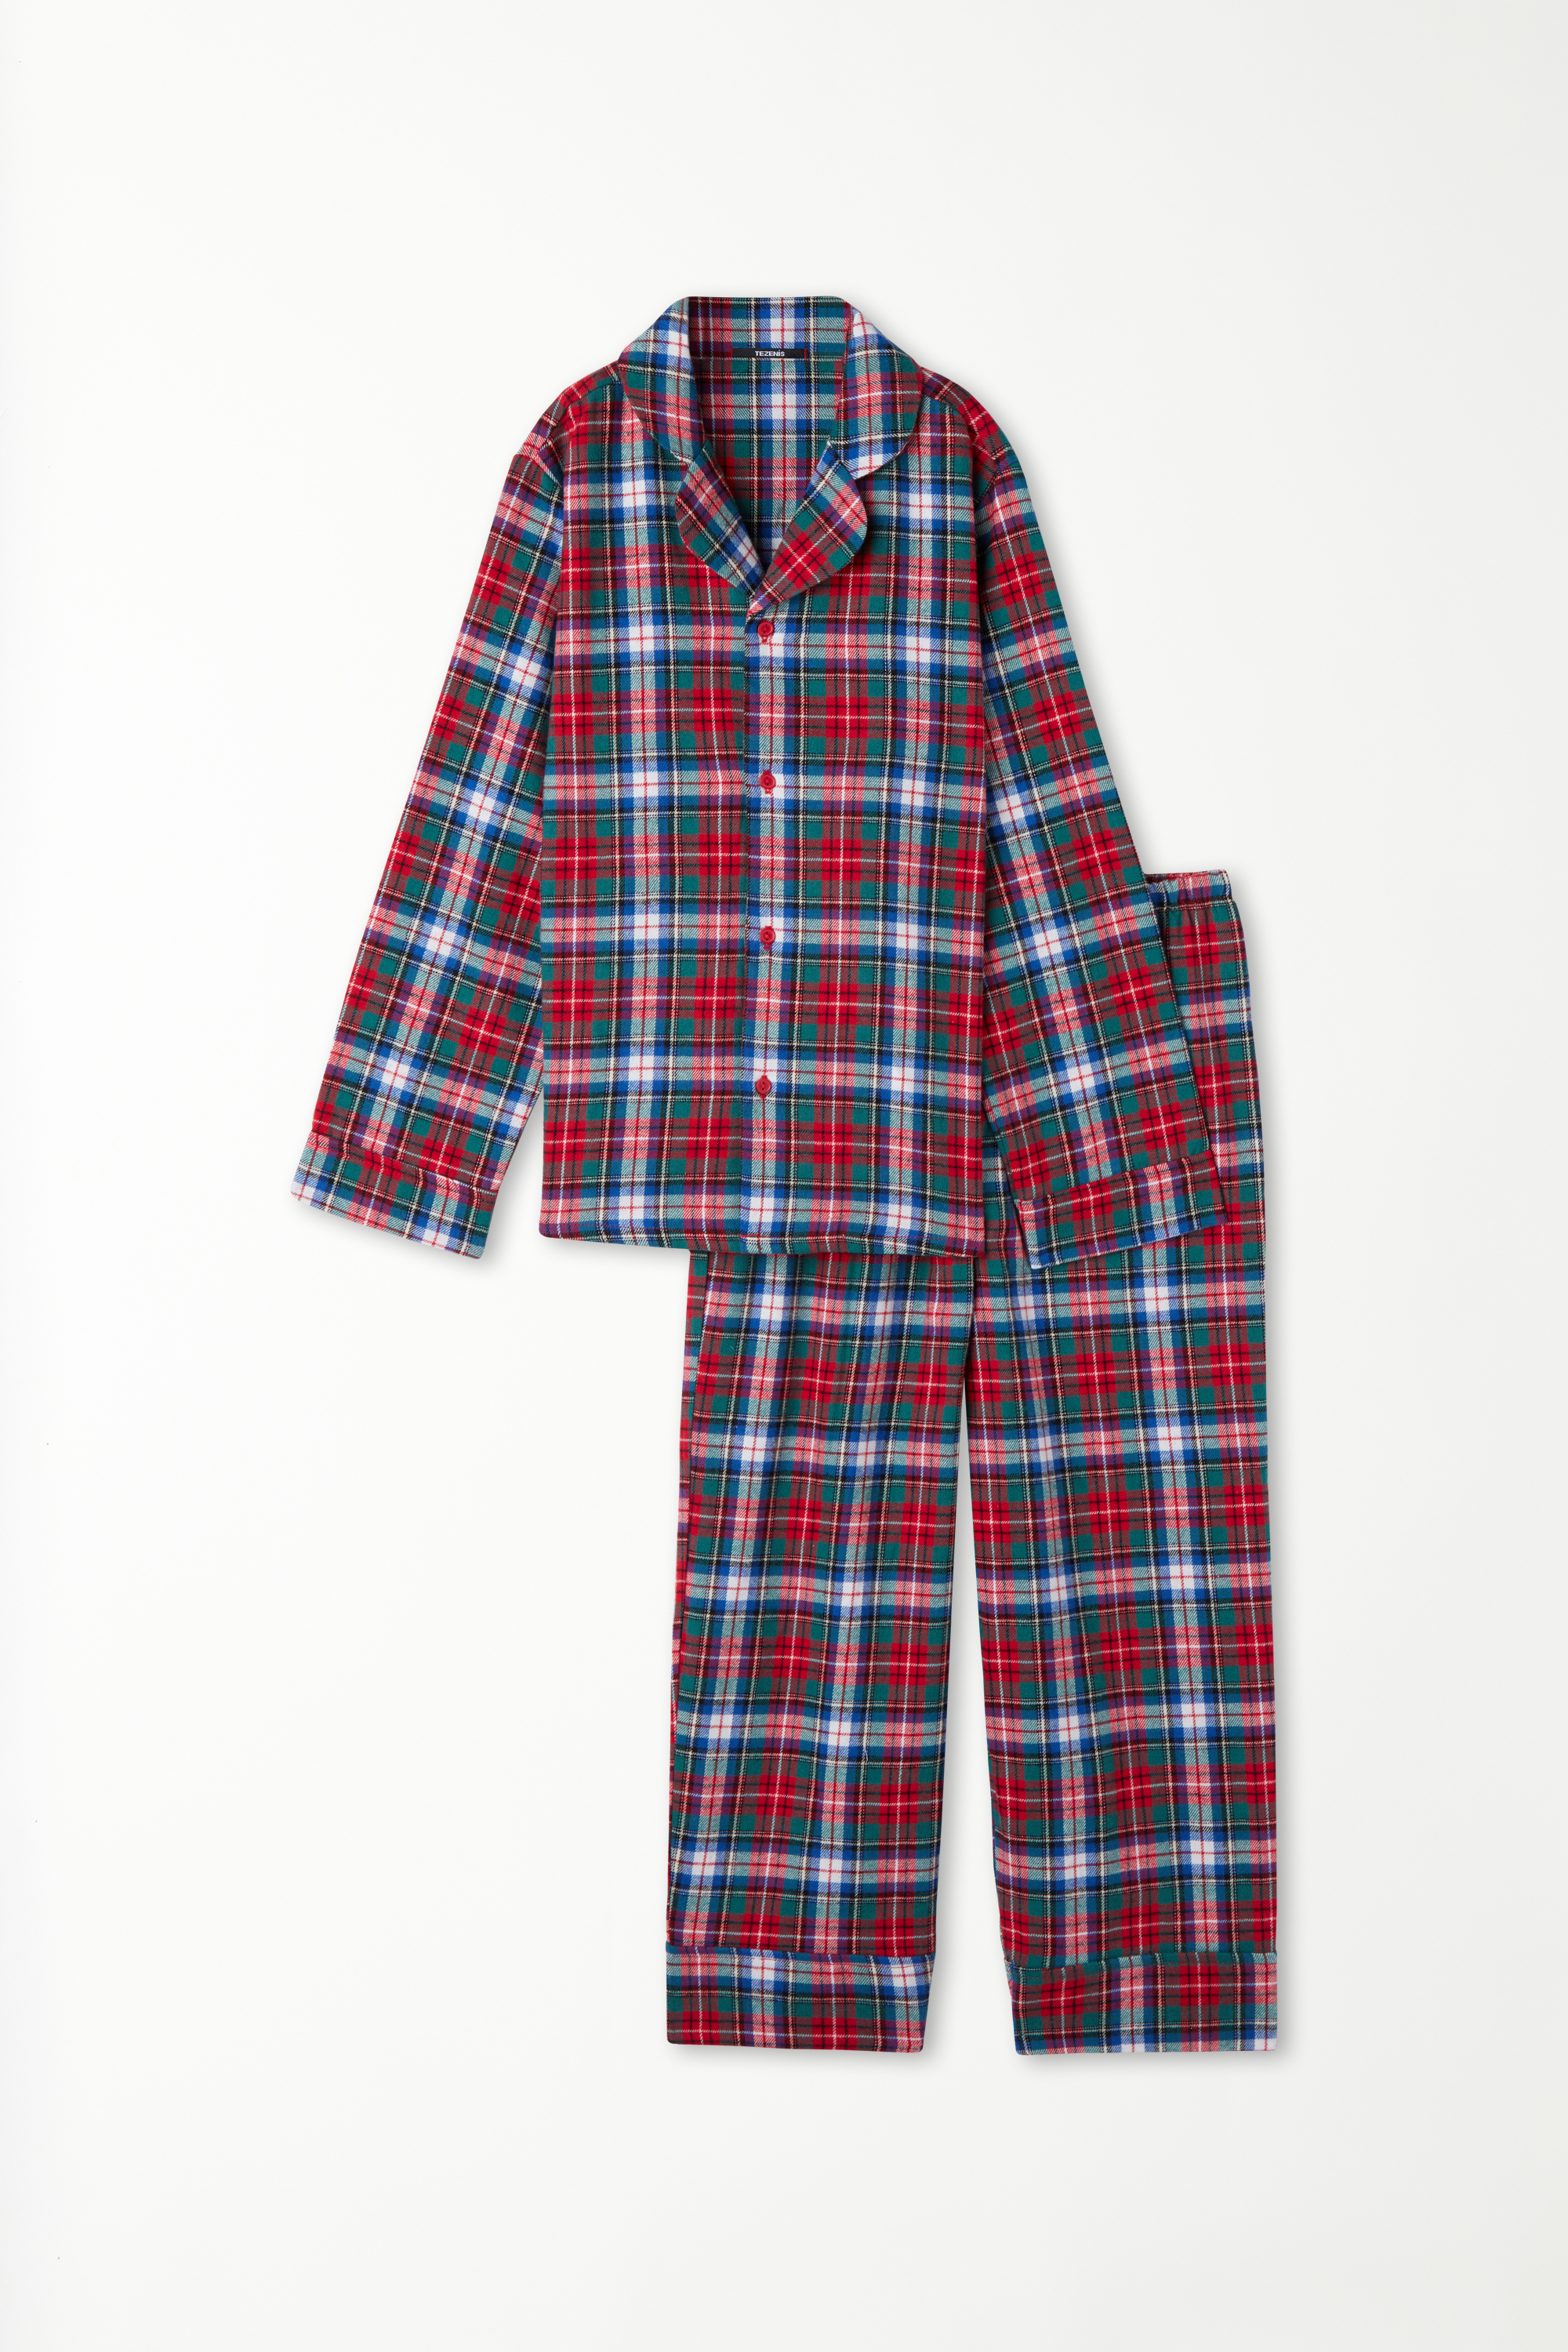 Langer Unisex-Flanellpyjama mit durchgeknöpftem Oberteil für Kinder